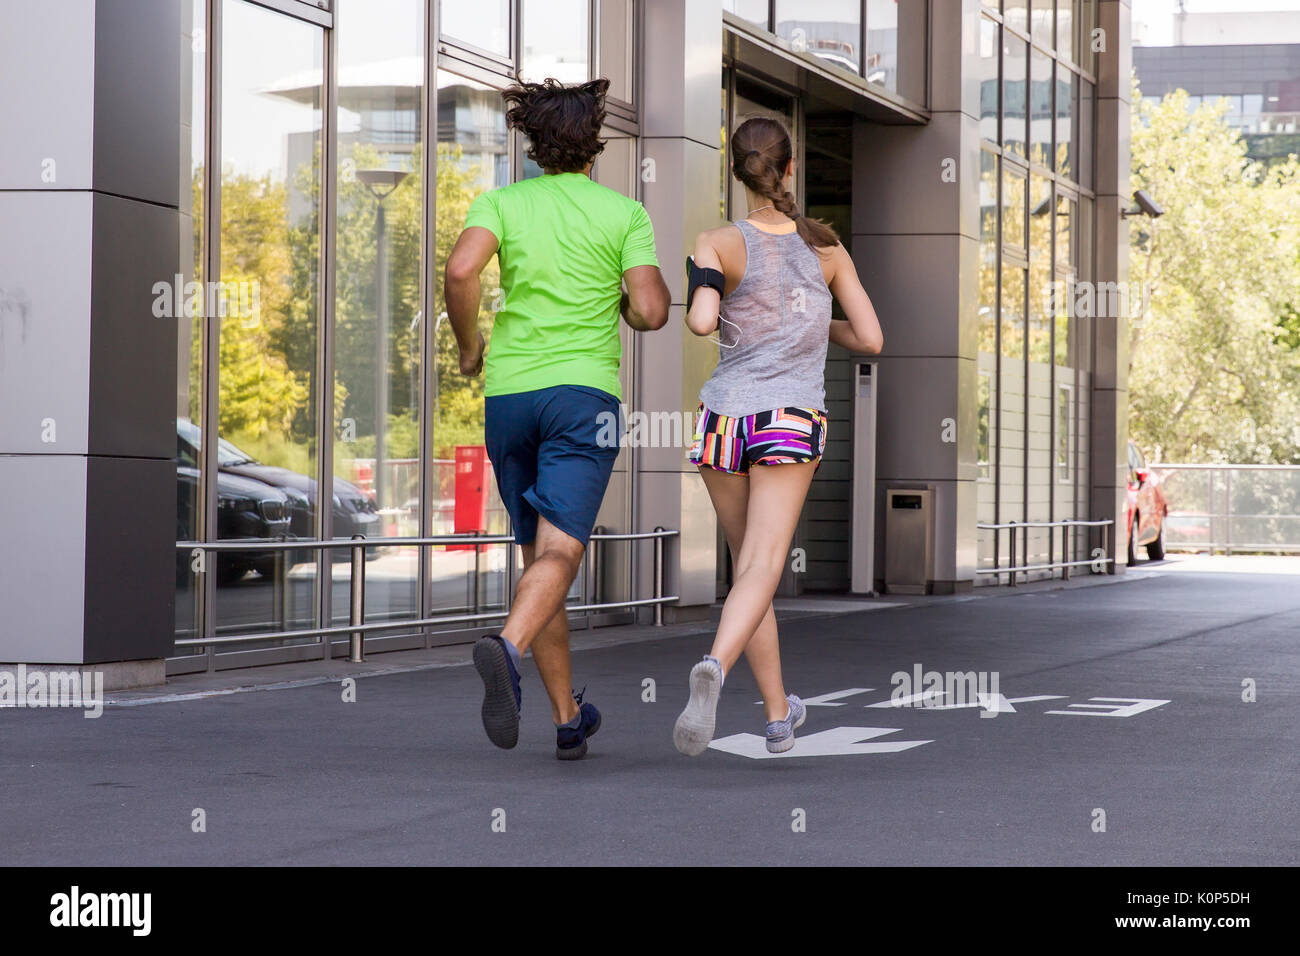 Schöner Mann und schöne Frau joggen zusammen auf der Straße an einem sonnigen Tag Stockfoto